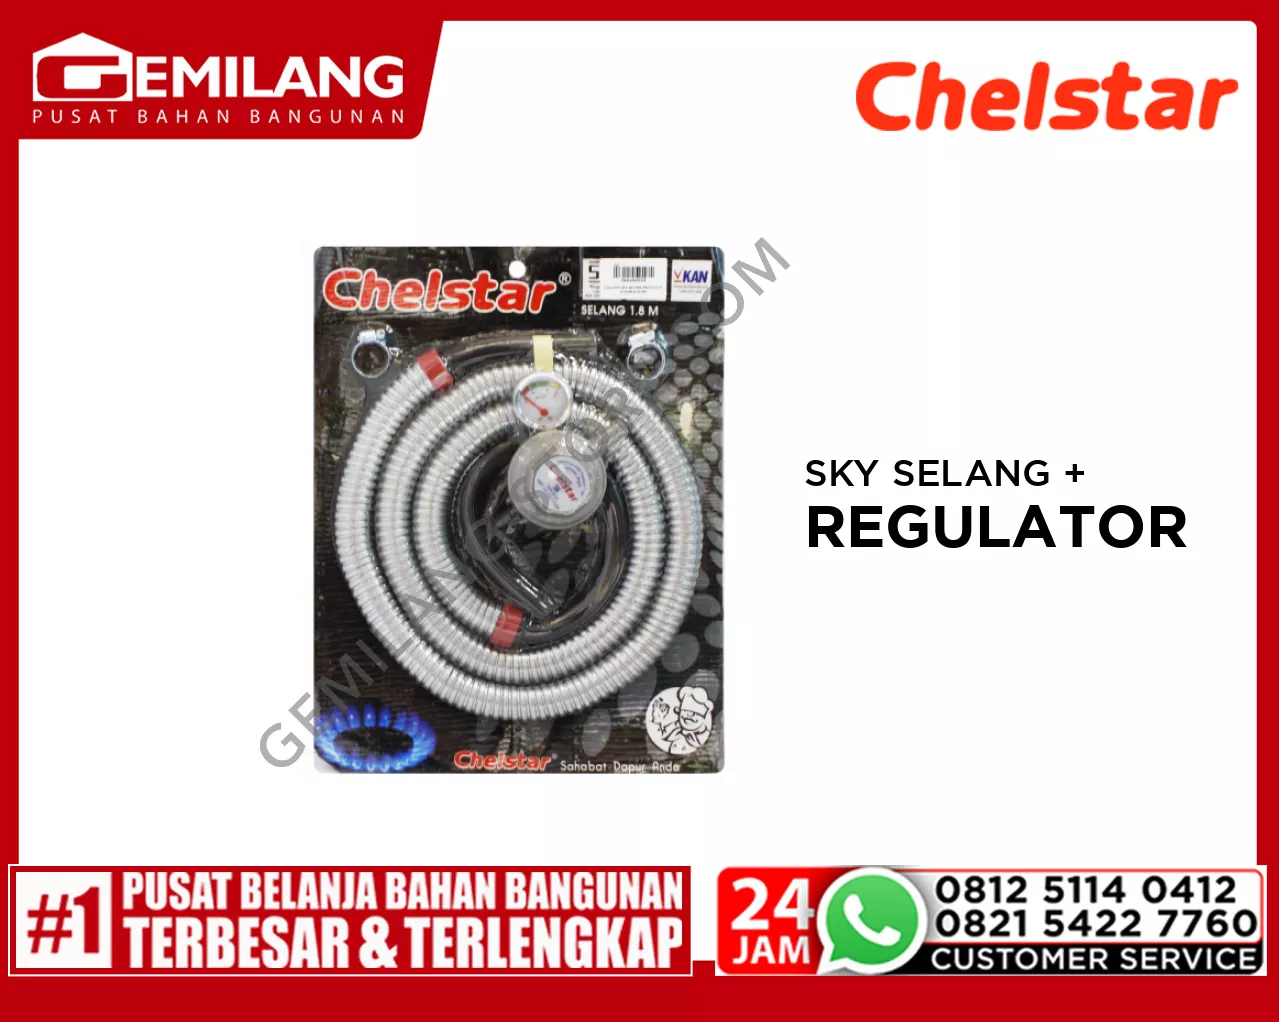 CHELSTAR SKY SELANG + REGULATOR FLEXIBLE CR 58